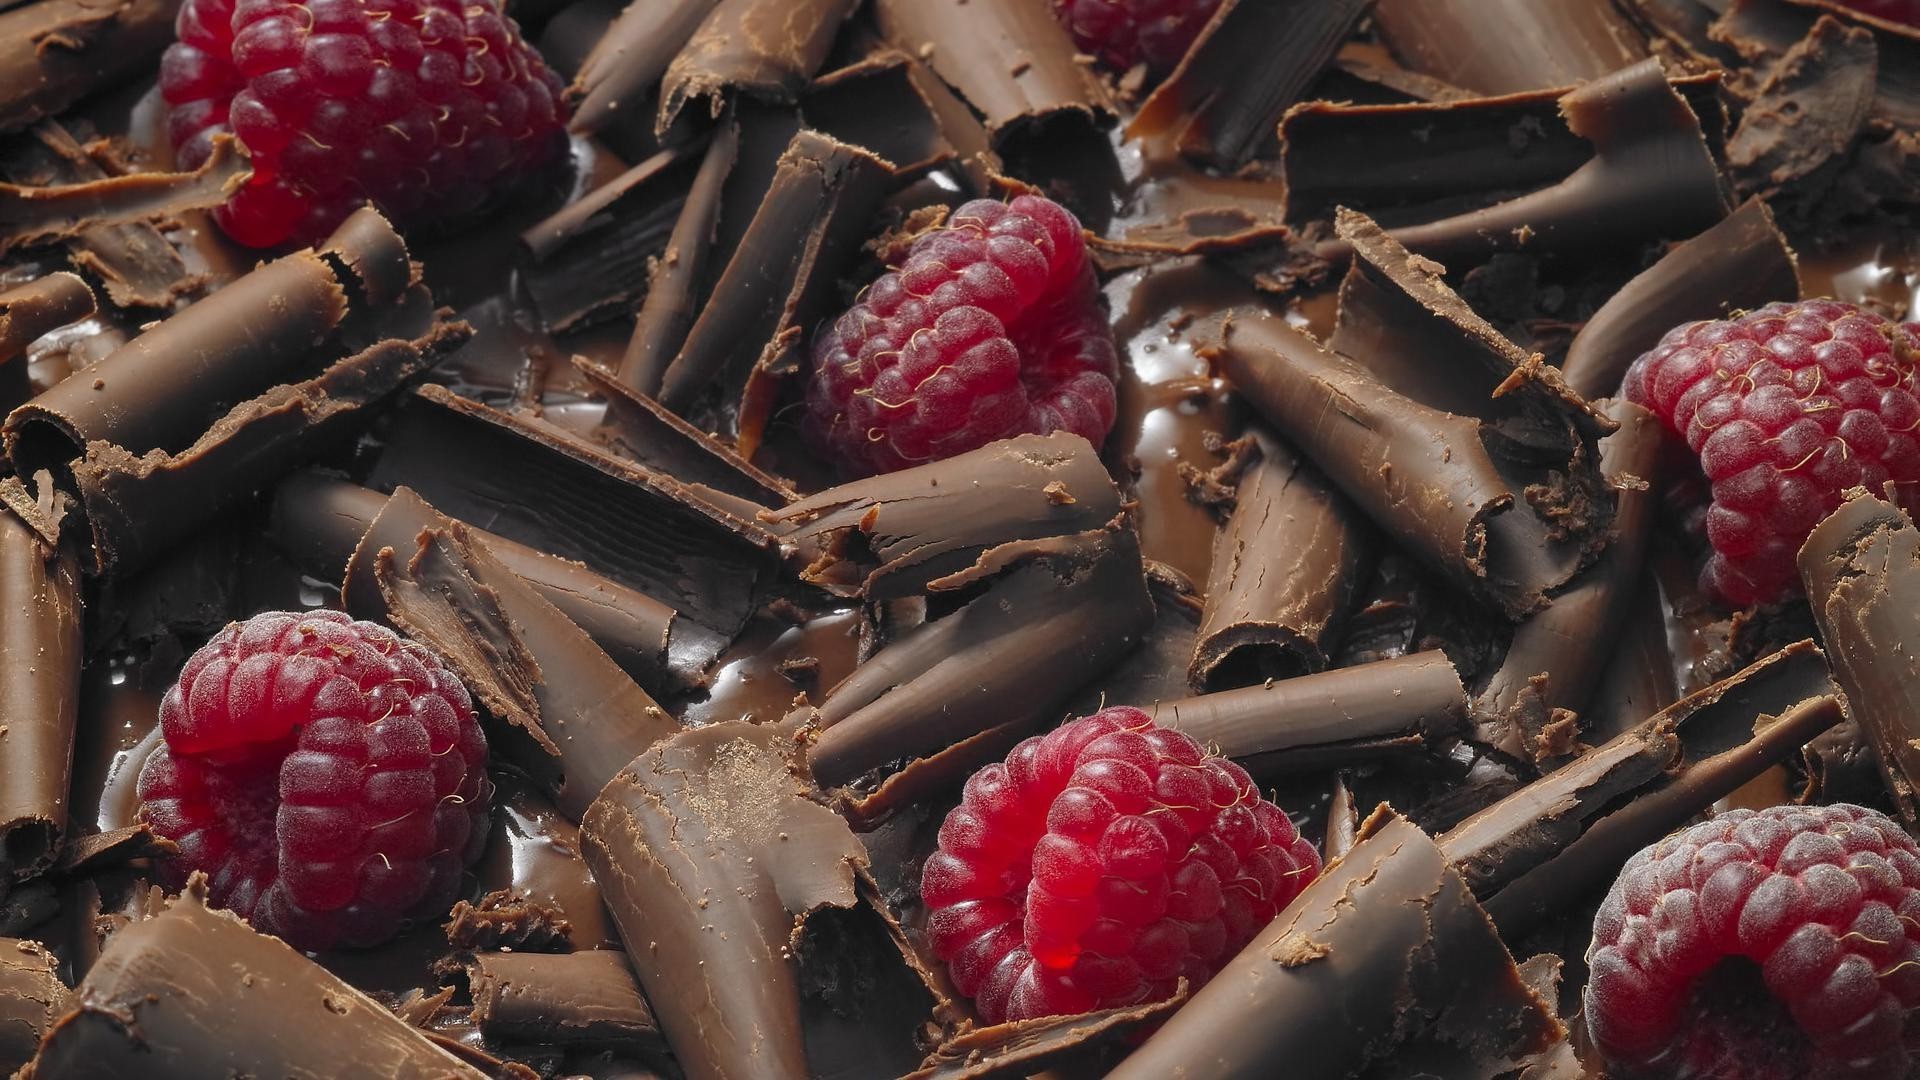 шоколад малина сладкий еда вкусные фрукты сахар ягодка кондитерское изделие конфеты вкусные освежение натюрморт многие эпикур питание искушение диета индульгенция